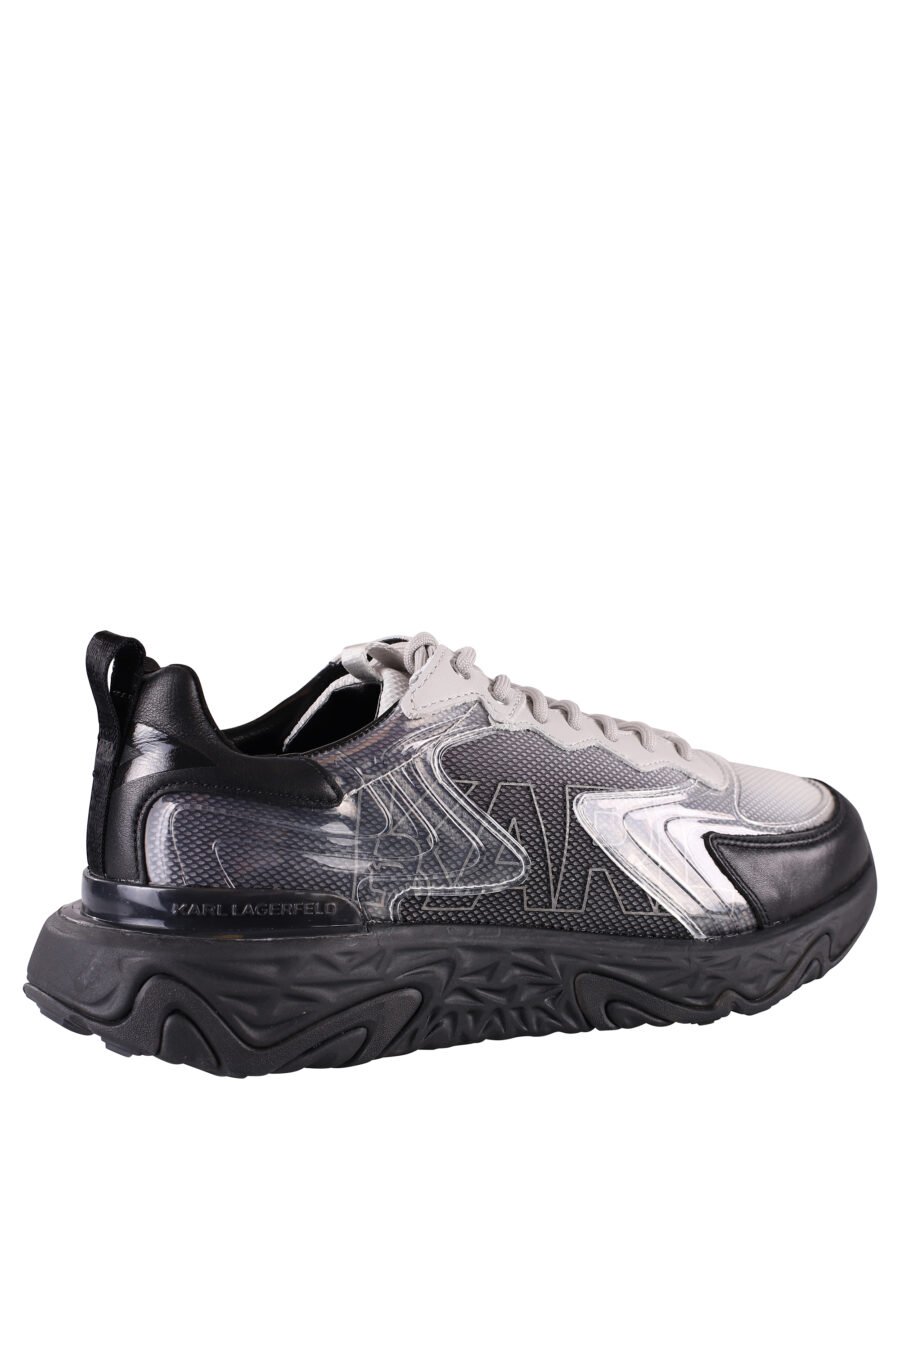 Zapatillas negras "blaze" con detalles blancos y transparentes - IMG 8478